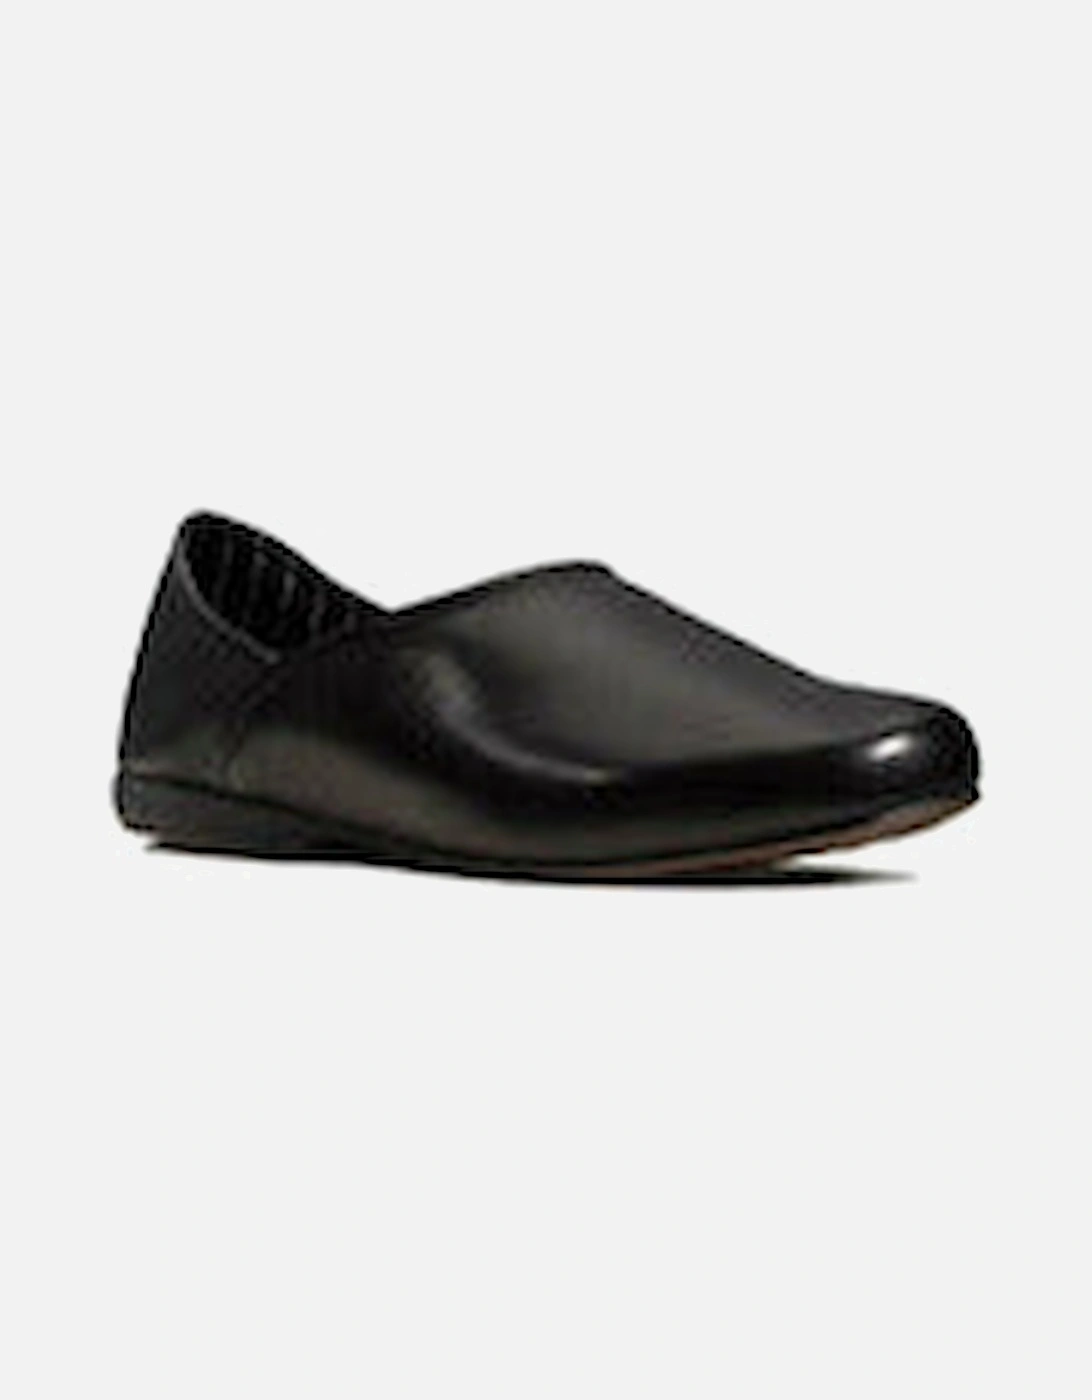 Harston Elite black leather slipper, 6 of 5